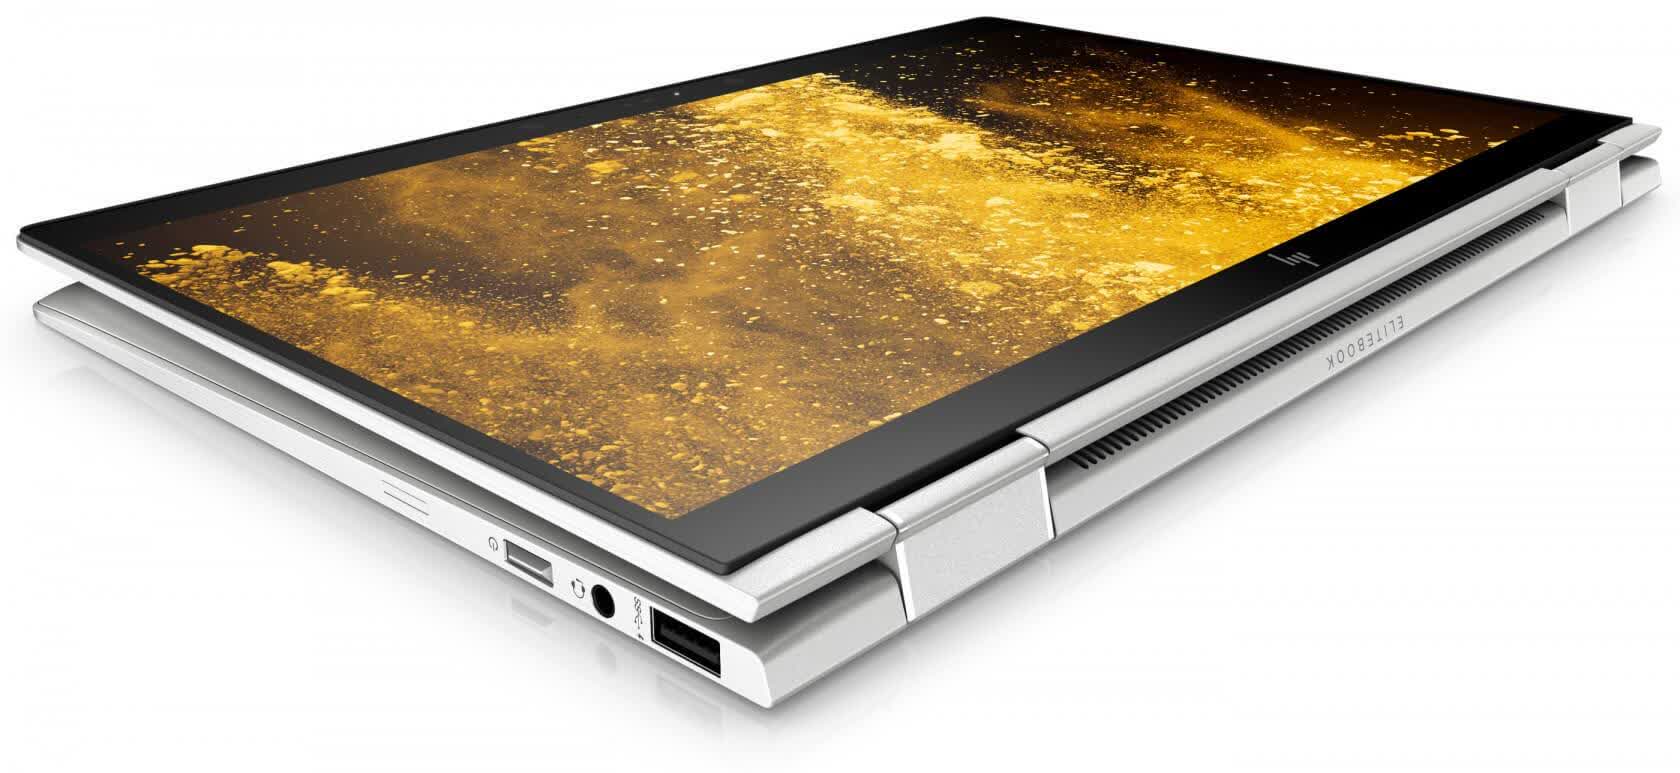 HP EliteBook X360 1030 G3 Reviews